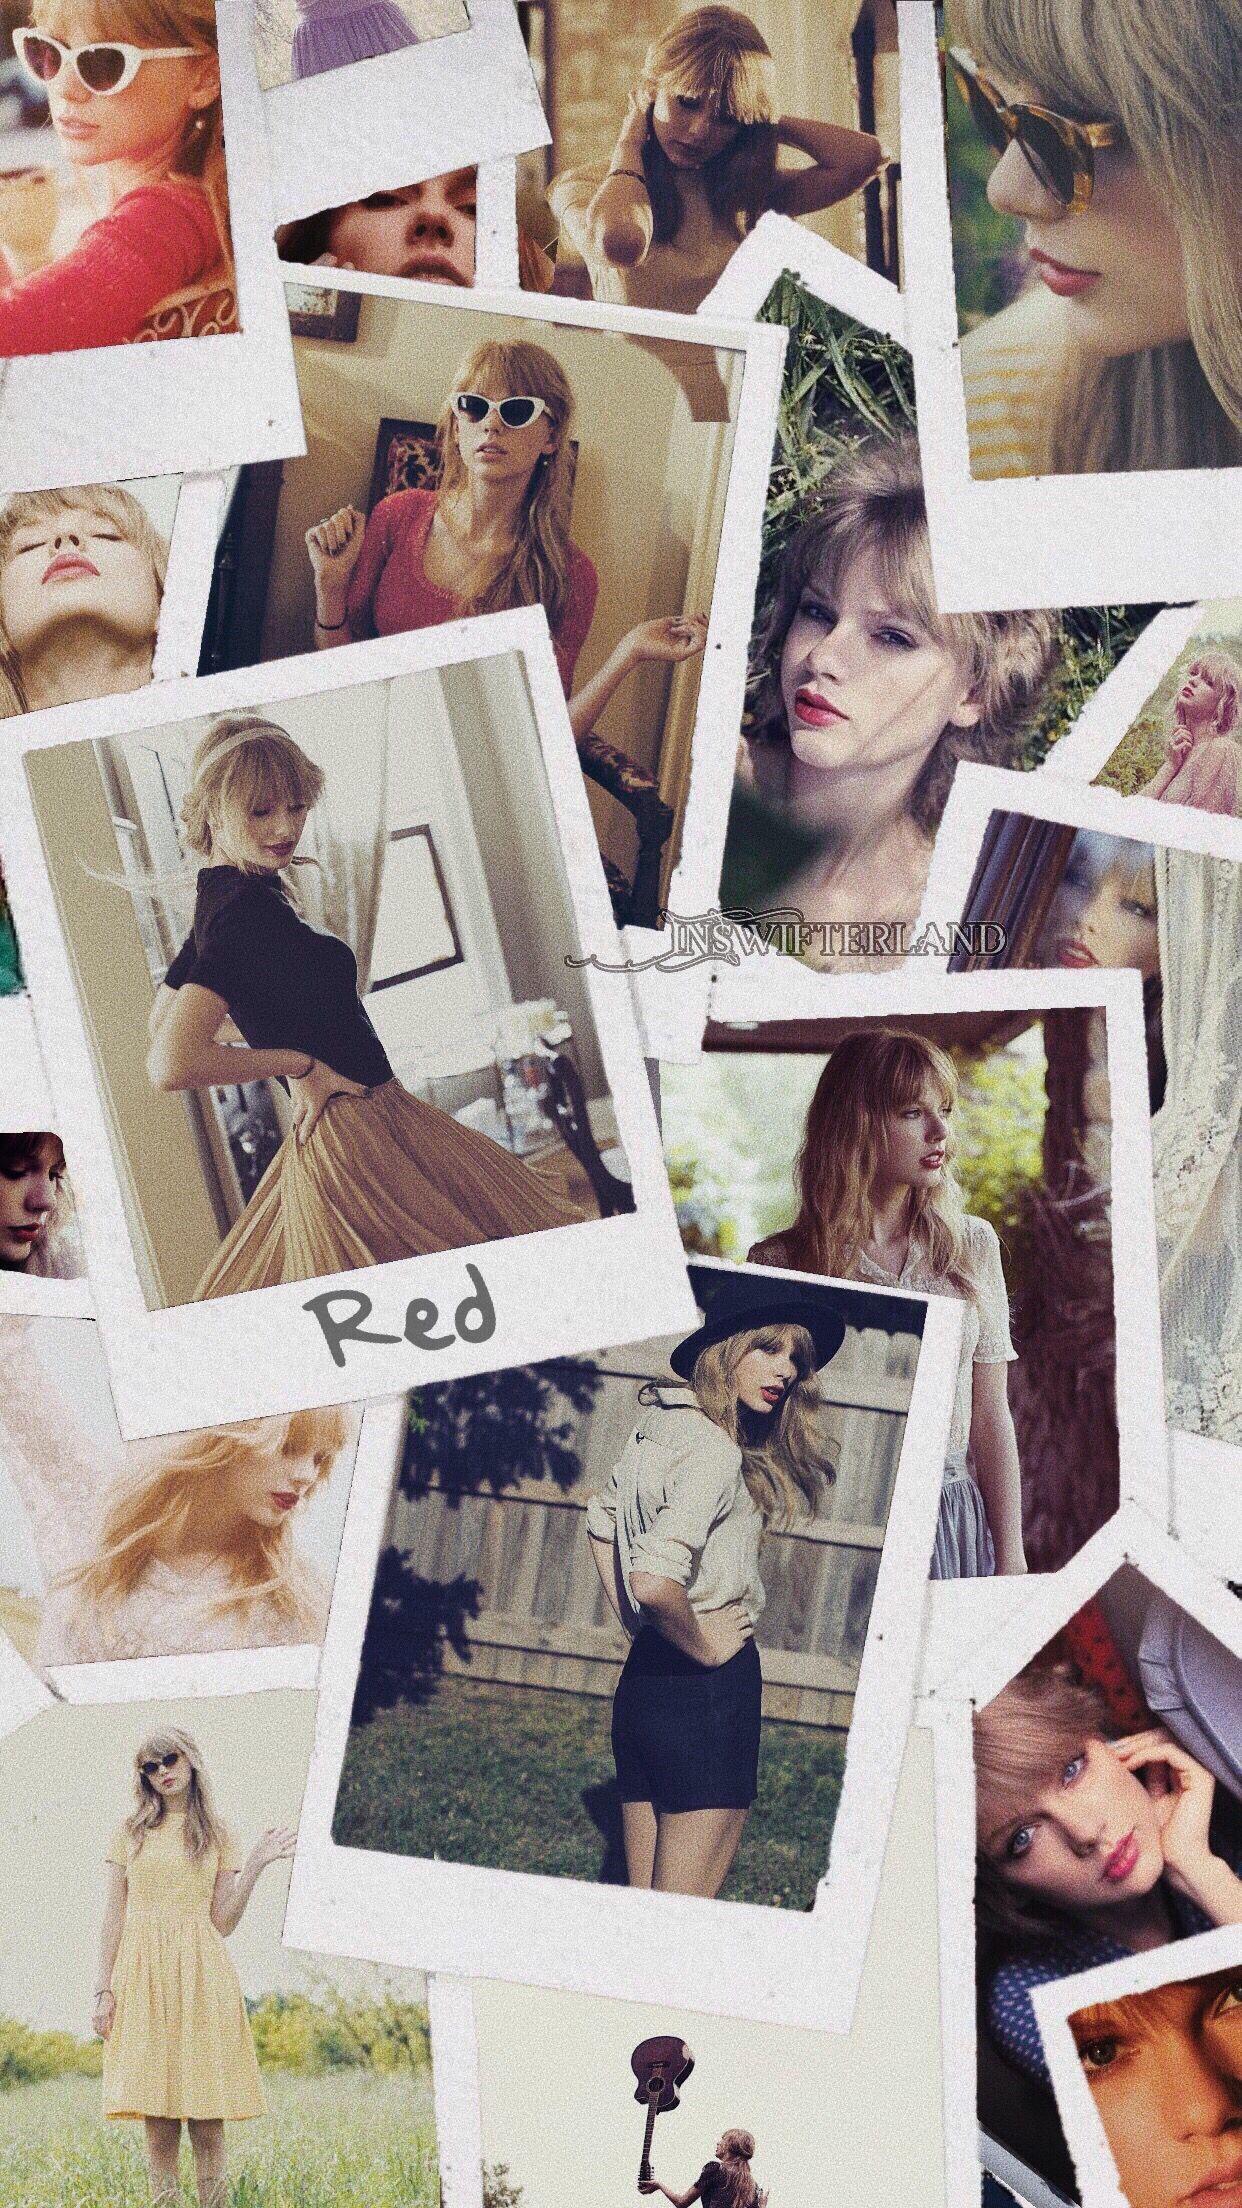 Taylor Swift Wallpaper. Taylor swift wallpaper, Taylor swift picture, Taylor swift facts